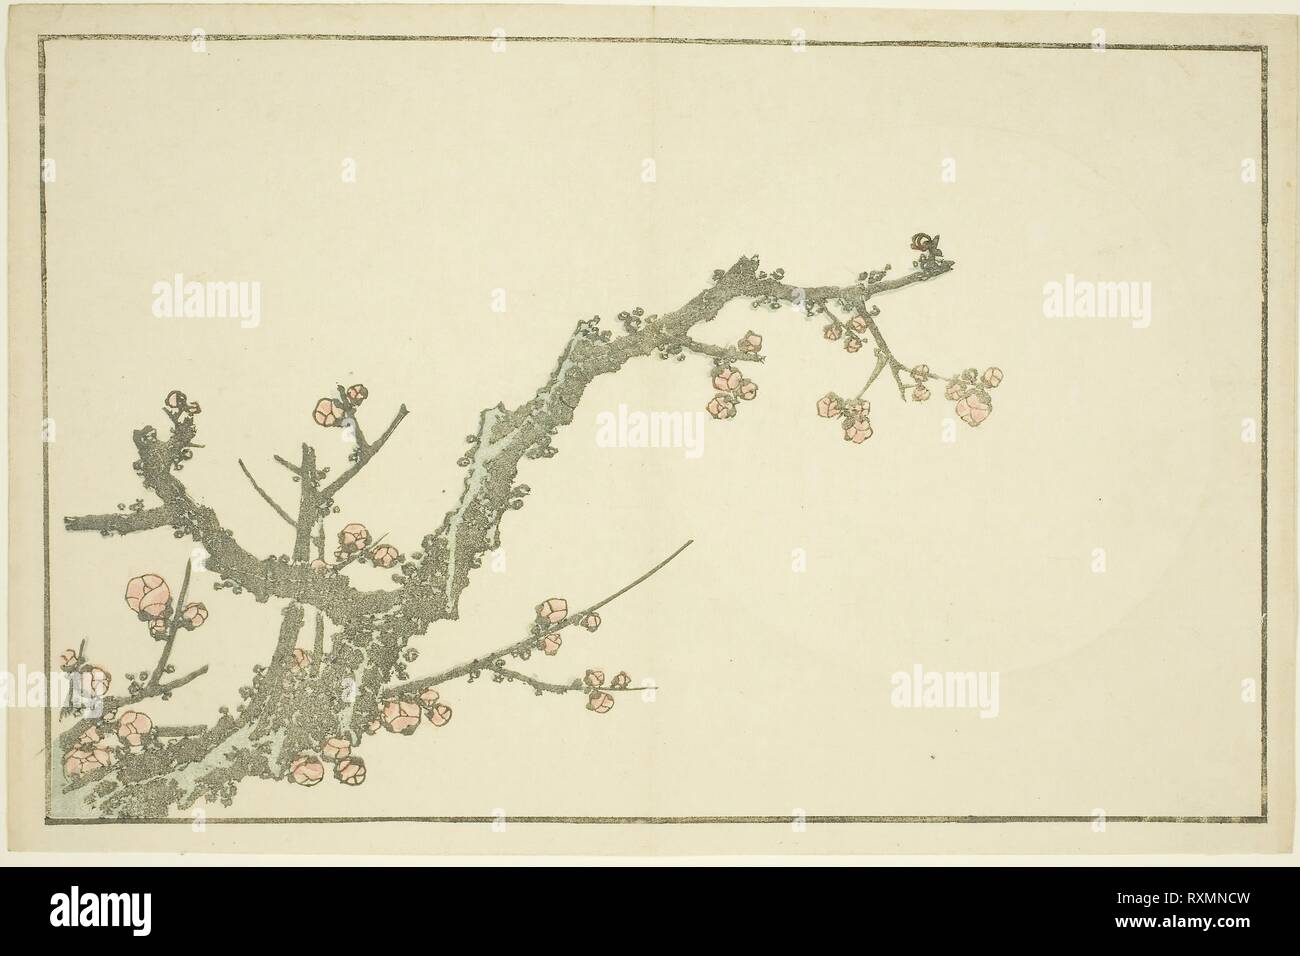 Fleurs de Prunier, à partir de la photo Livre de peintures réalistes d'Hokusai Hokusai (shashin gafu). Katsushika Hokusai ? ?  ? ? ; Japonais, 1760-1849. Date : 1809-1819. Dimensions : 22 x 33,8 cm (8 5/8 x 13 5/16 in.). Gravure sur bois en couleur (album). Origine : Japon. Musée : le Chicago Art Institute. Banque D'Images